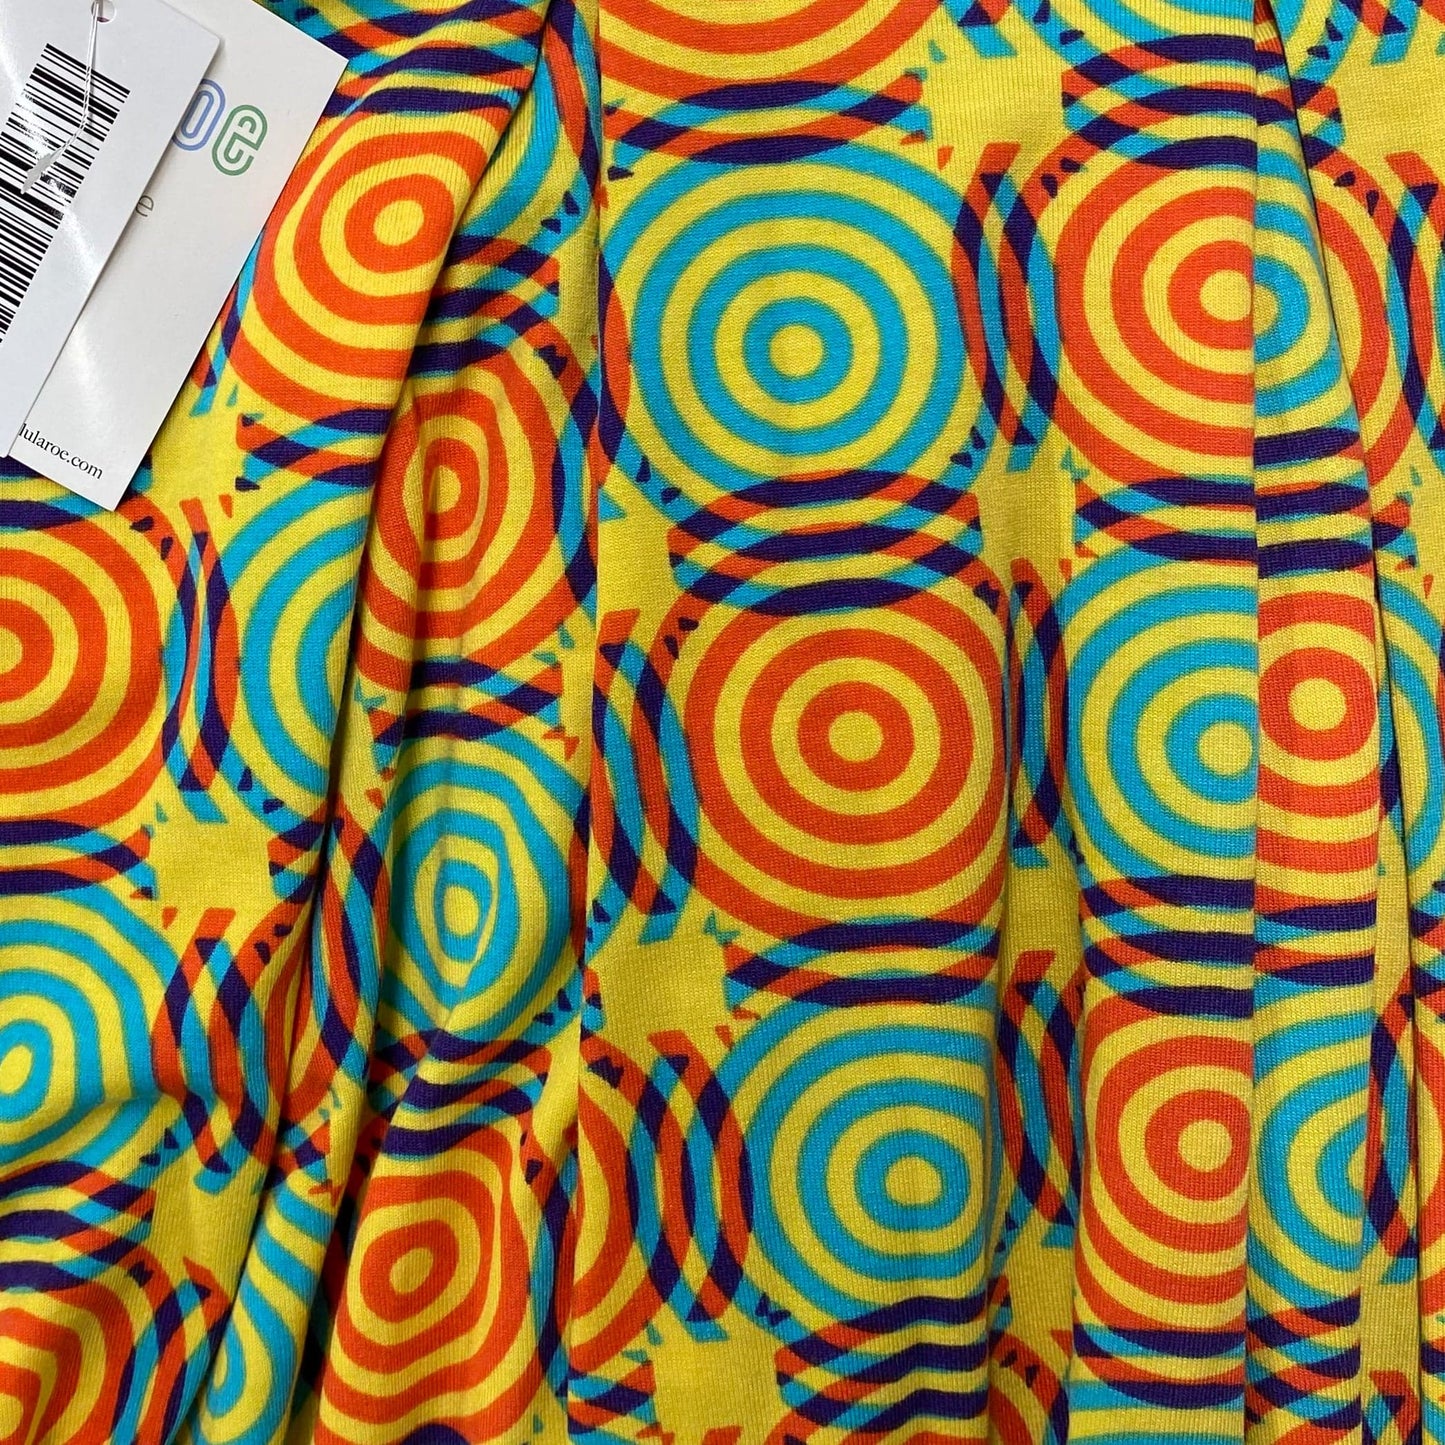 LuLaRoe Size XS Blue/Orange/Yellow Psychedelic Circles Madison Skirt w/Pockets! NWT*